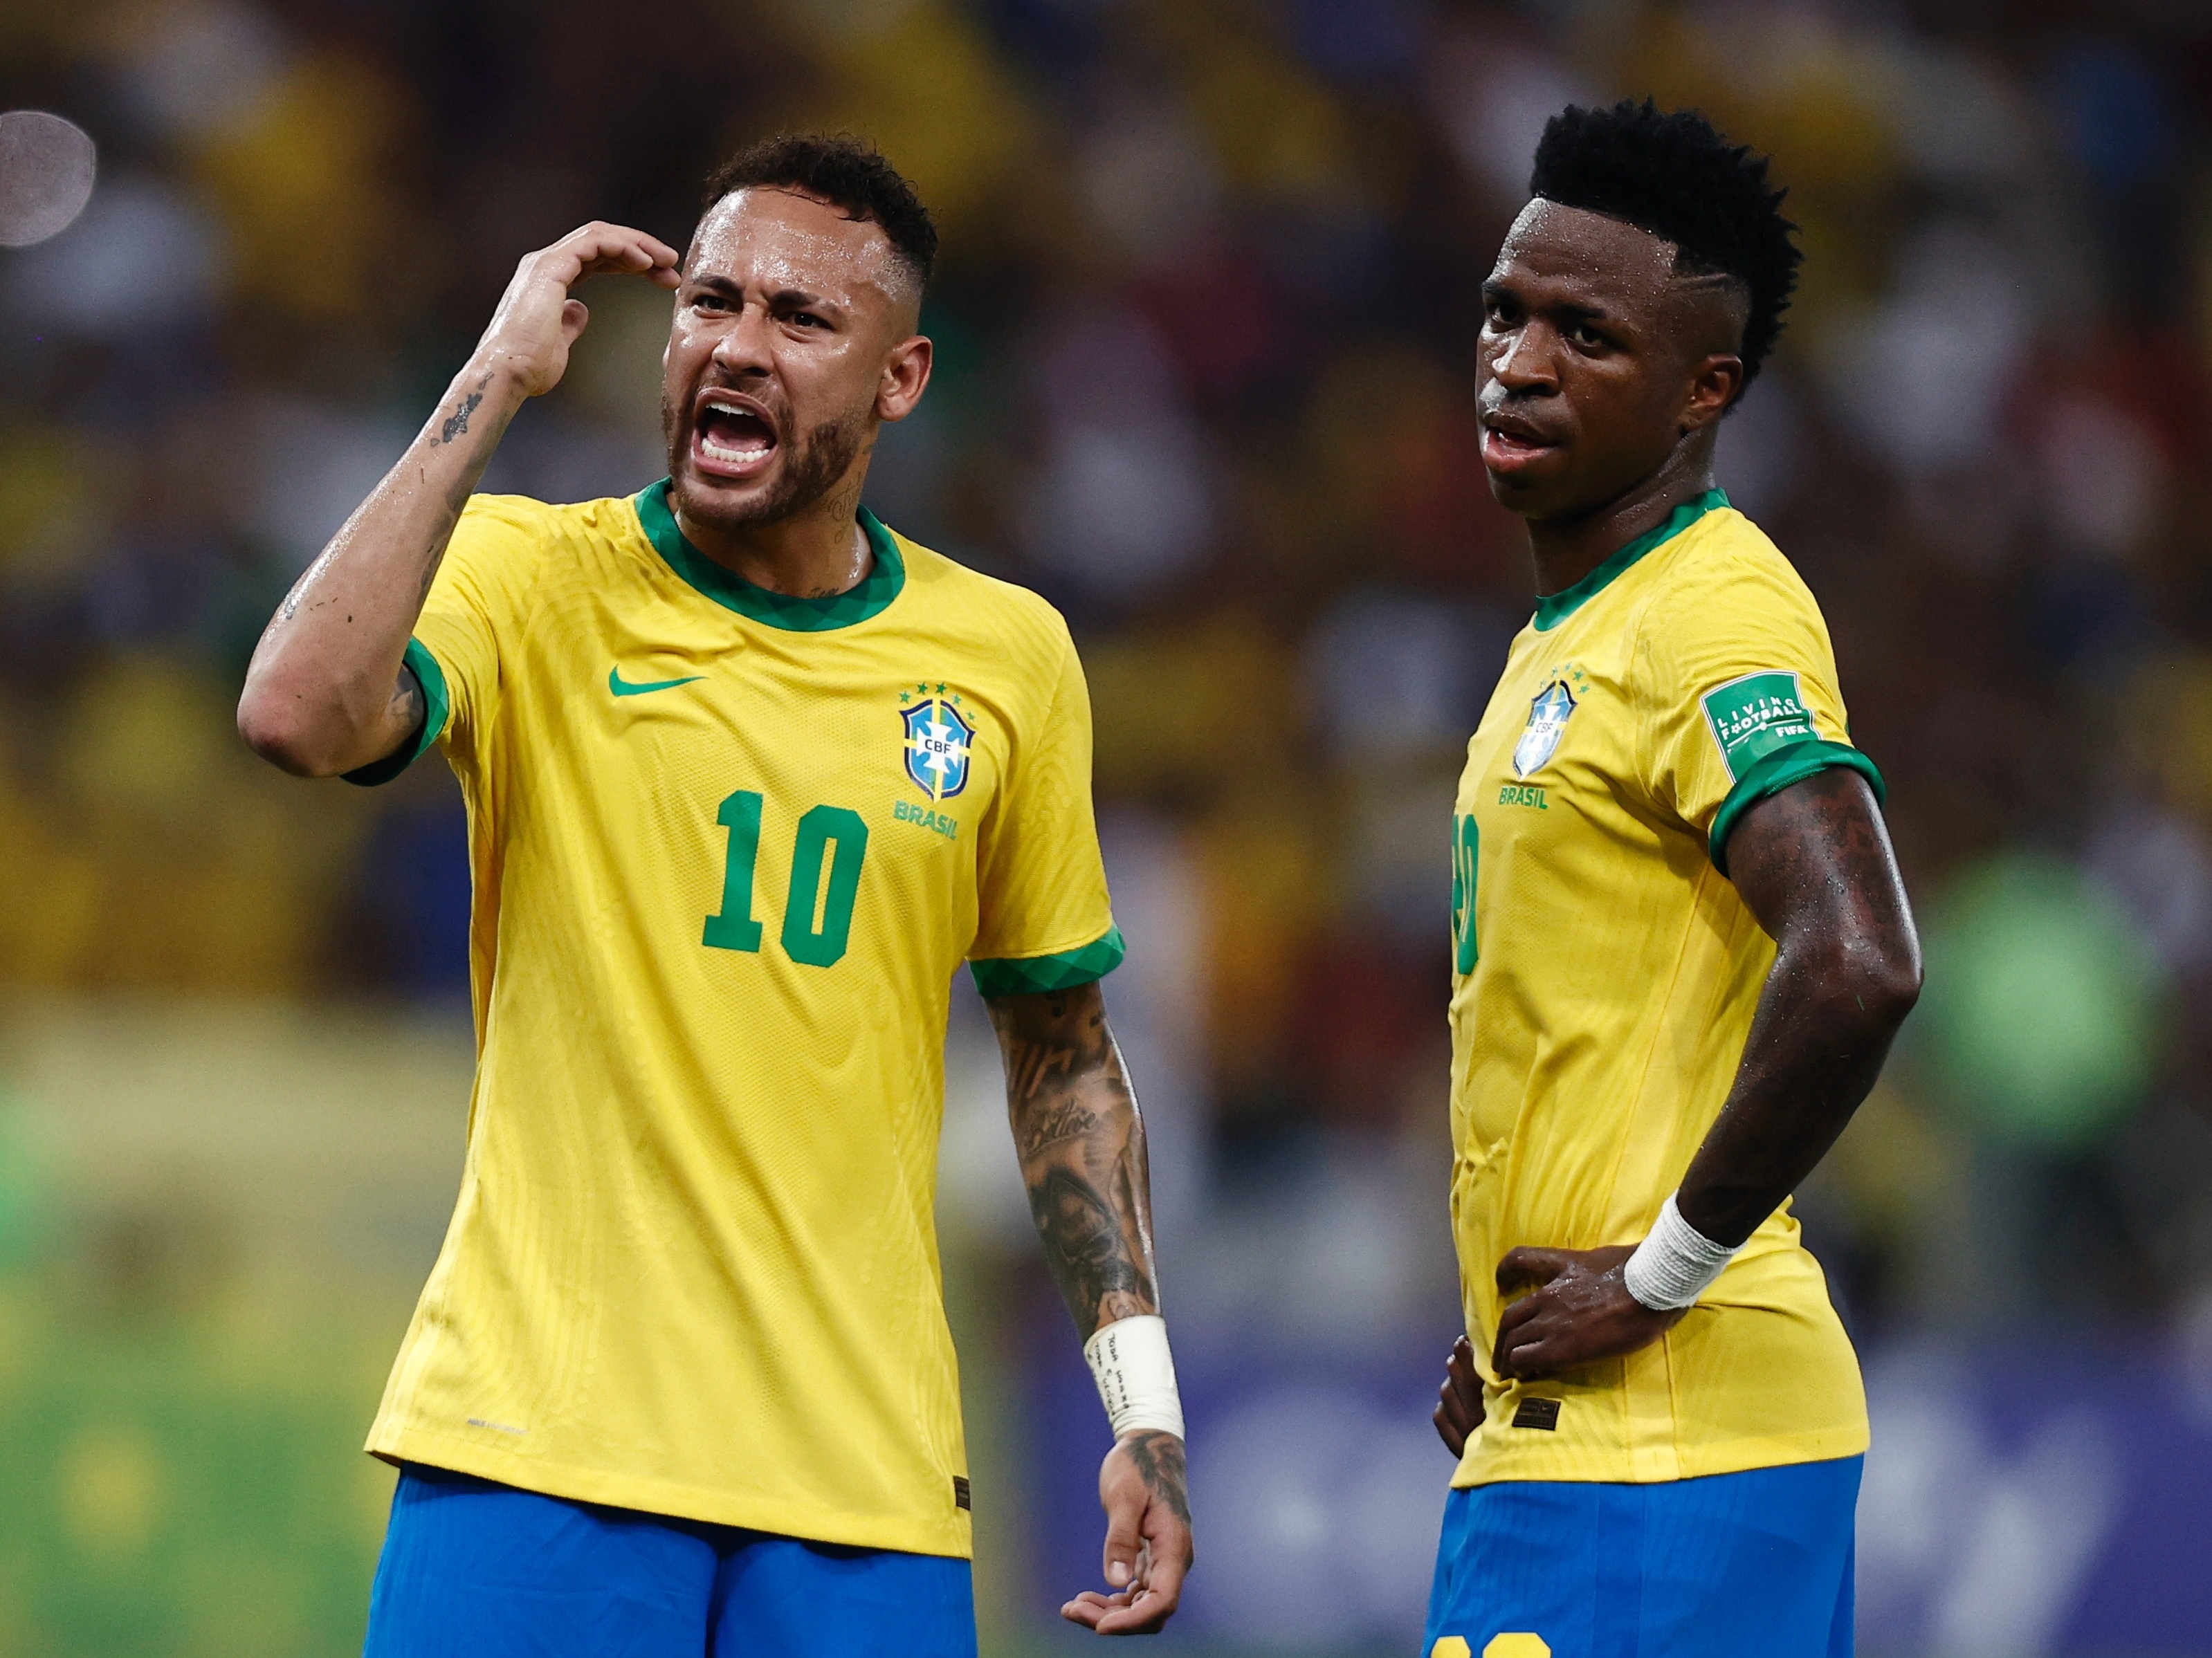 60 dias para a Copa 2022: Betfair analisa cenário e Rivaldo comenta sobre o Brasil